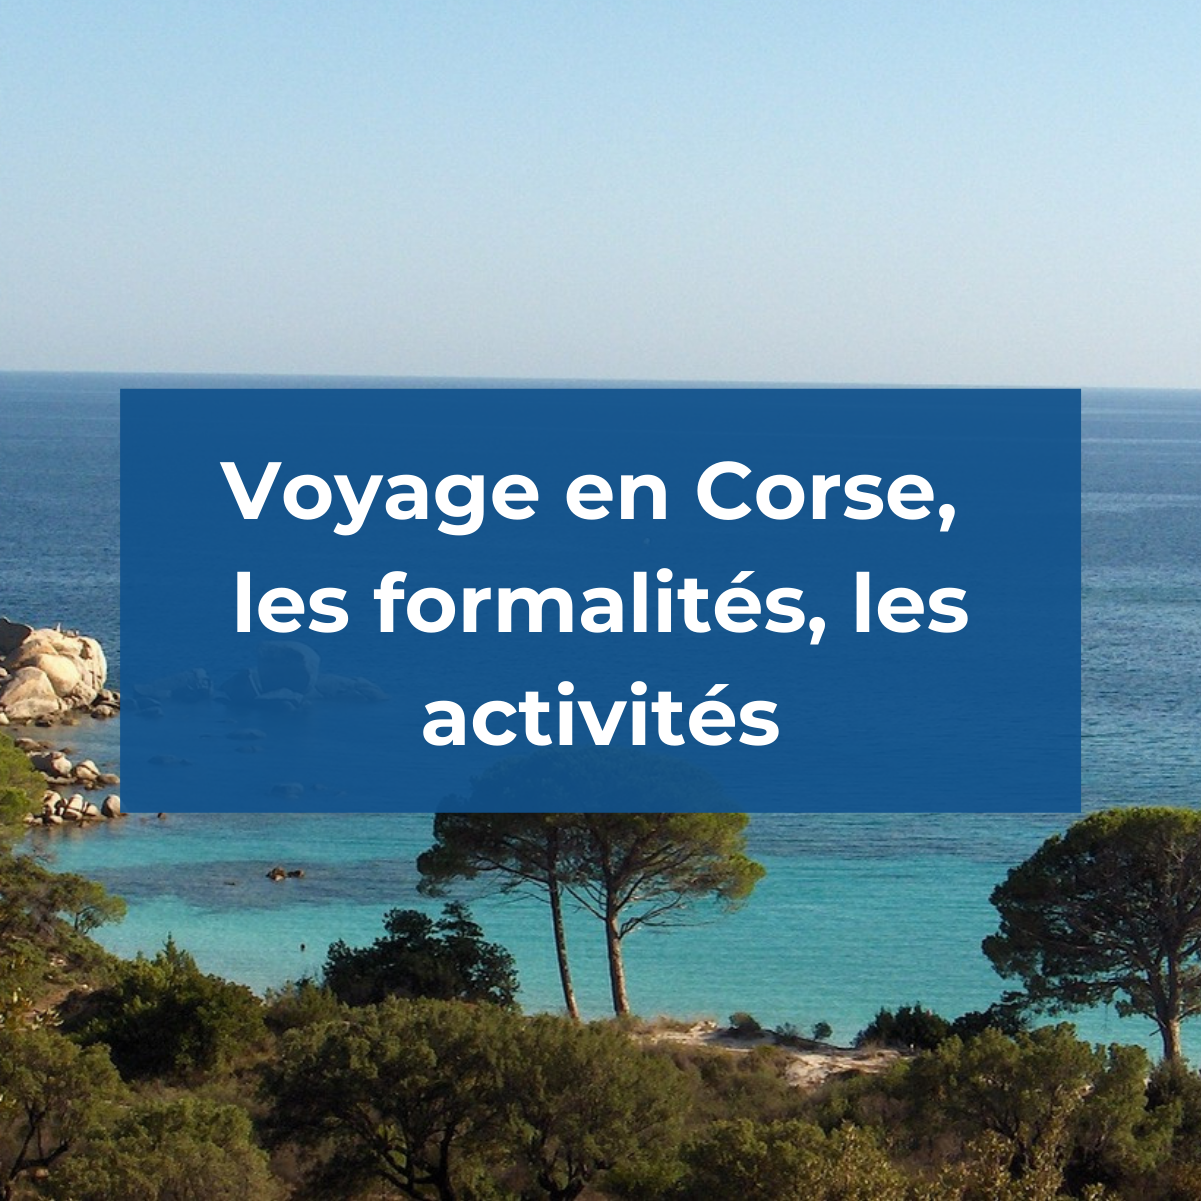 Voyage en Corse, les formalités, les activités